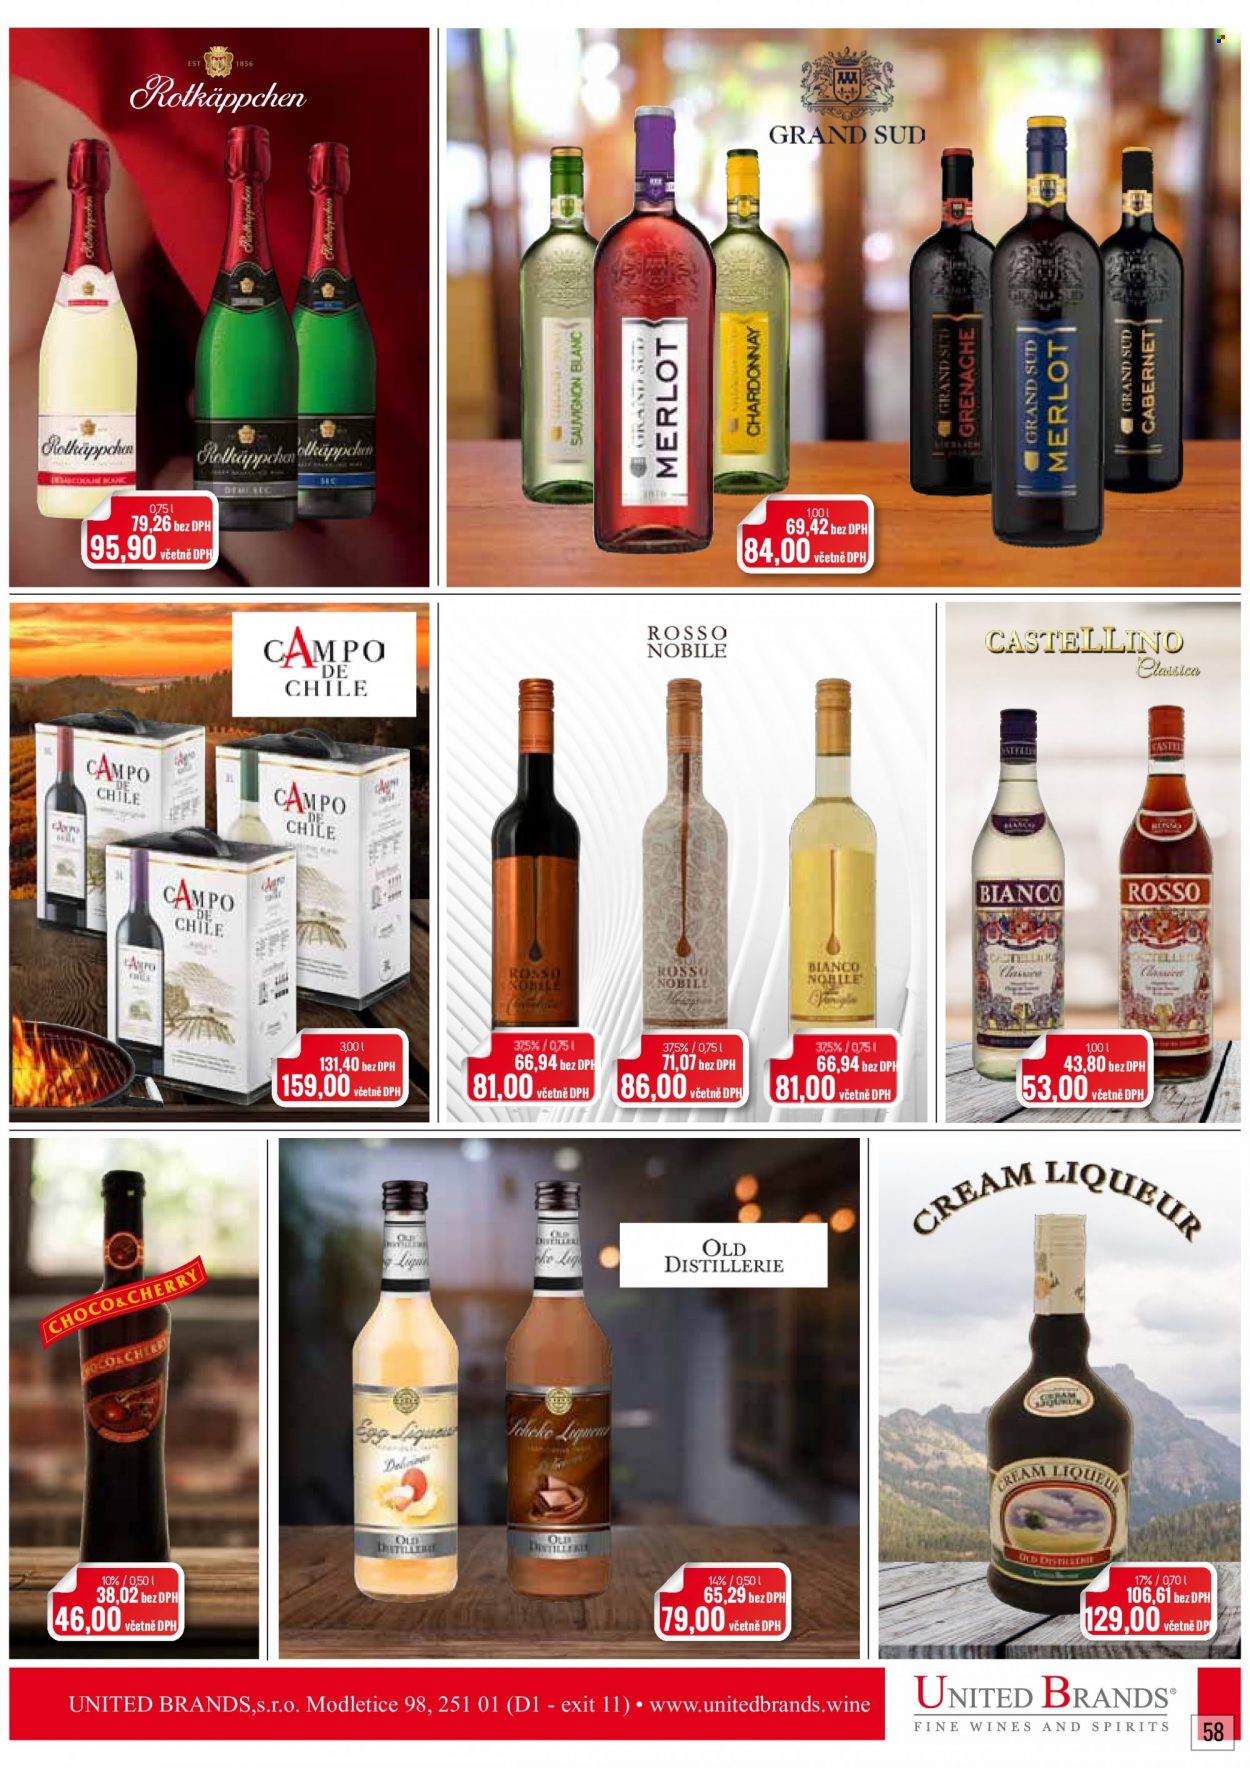 thumbnail - Leták Ratio - 1.11.2021 - 30.11.2021 - Produkty v akci - alkohol, bílé víno, červené víno, Chardonnay, Merlot, víno, Sauvignon Blanc, Grand Sud, Castellino. Strana 59.